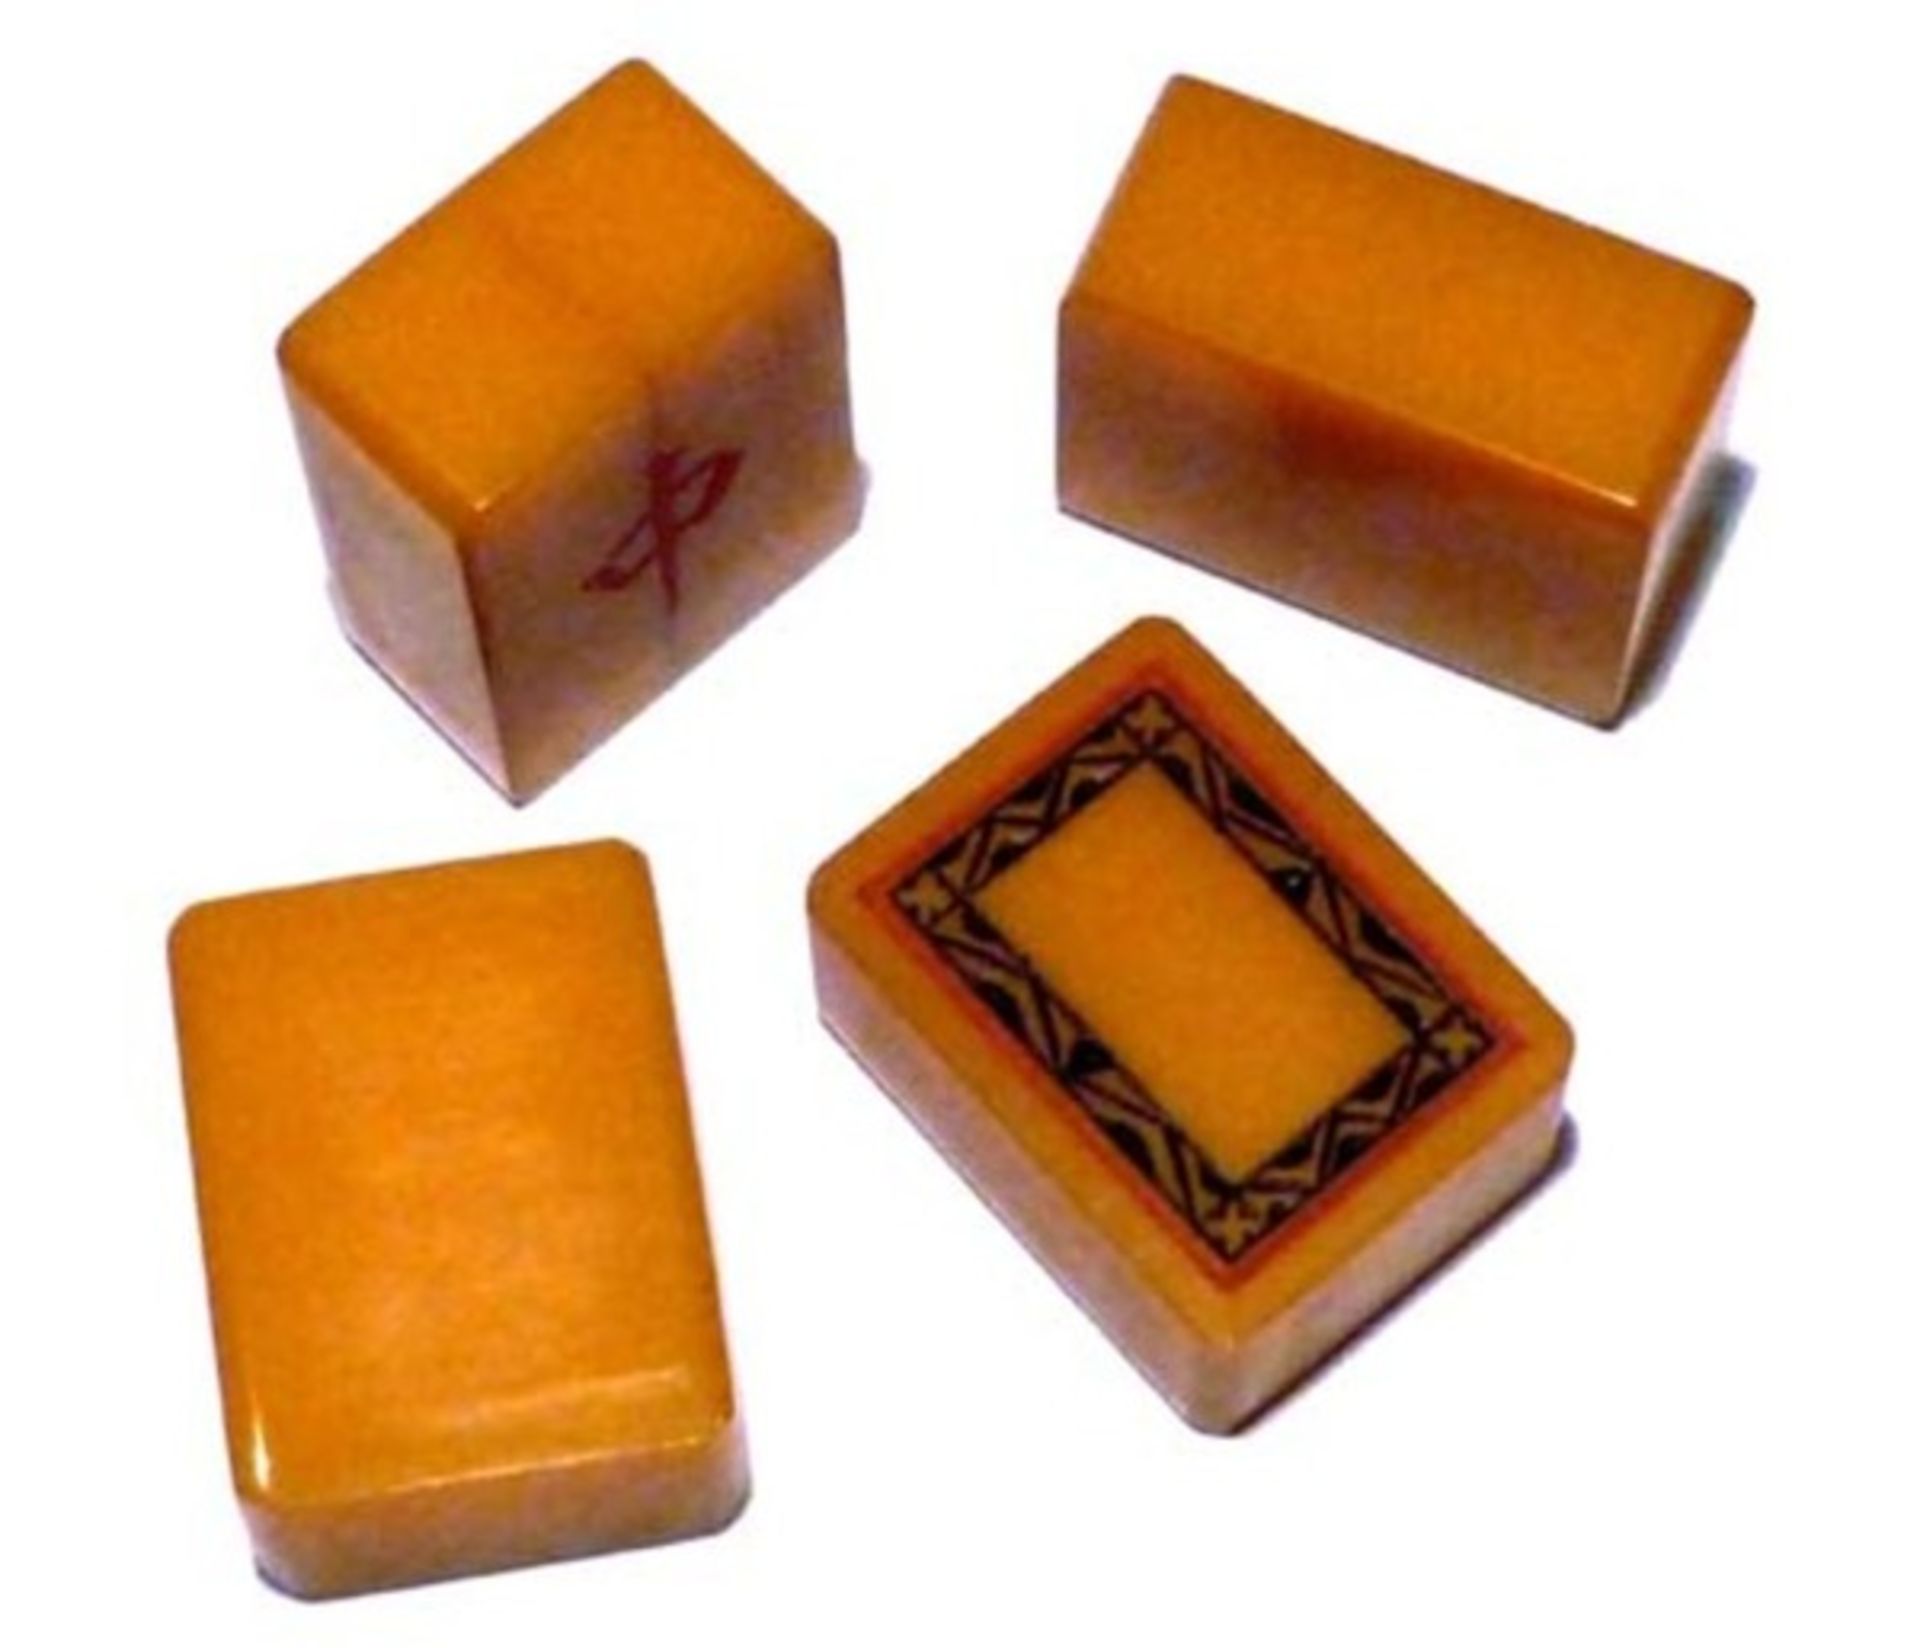 (Mahjong) Mahjong kunststof, traditionele 5-laden doos, ca. 1923 - Bild 5 aus 13